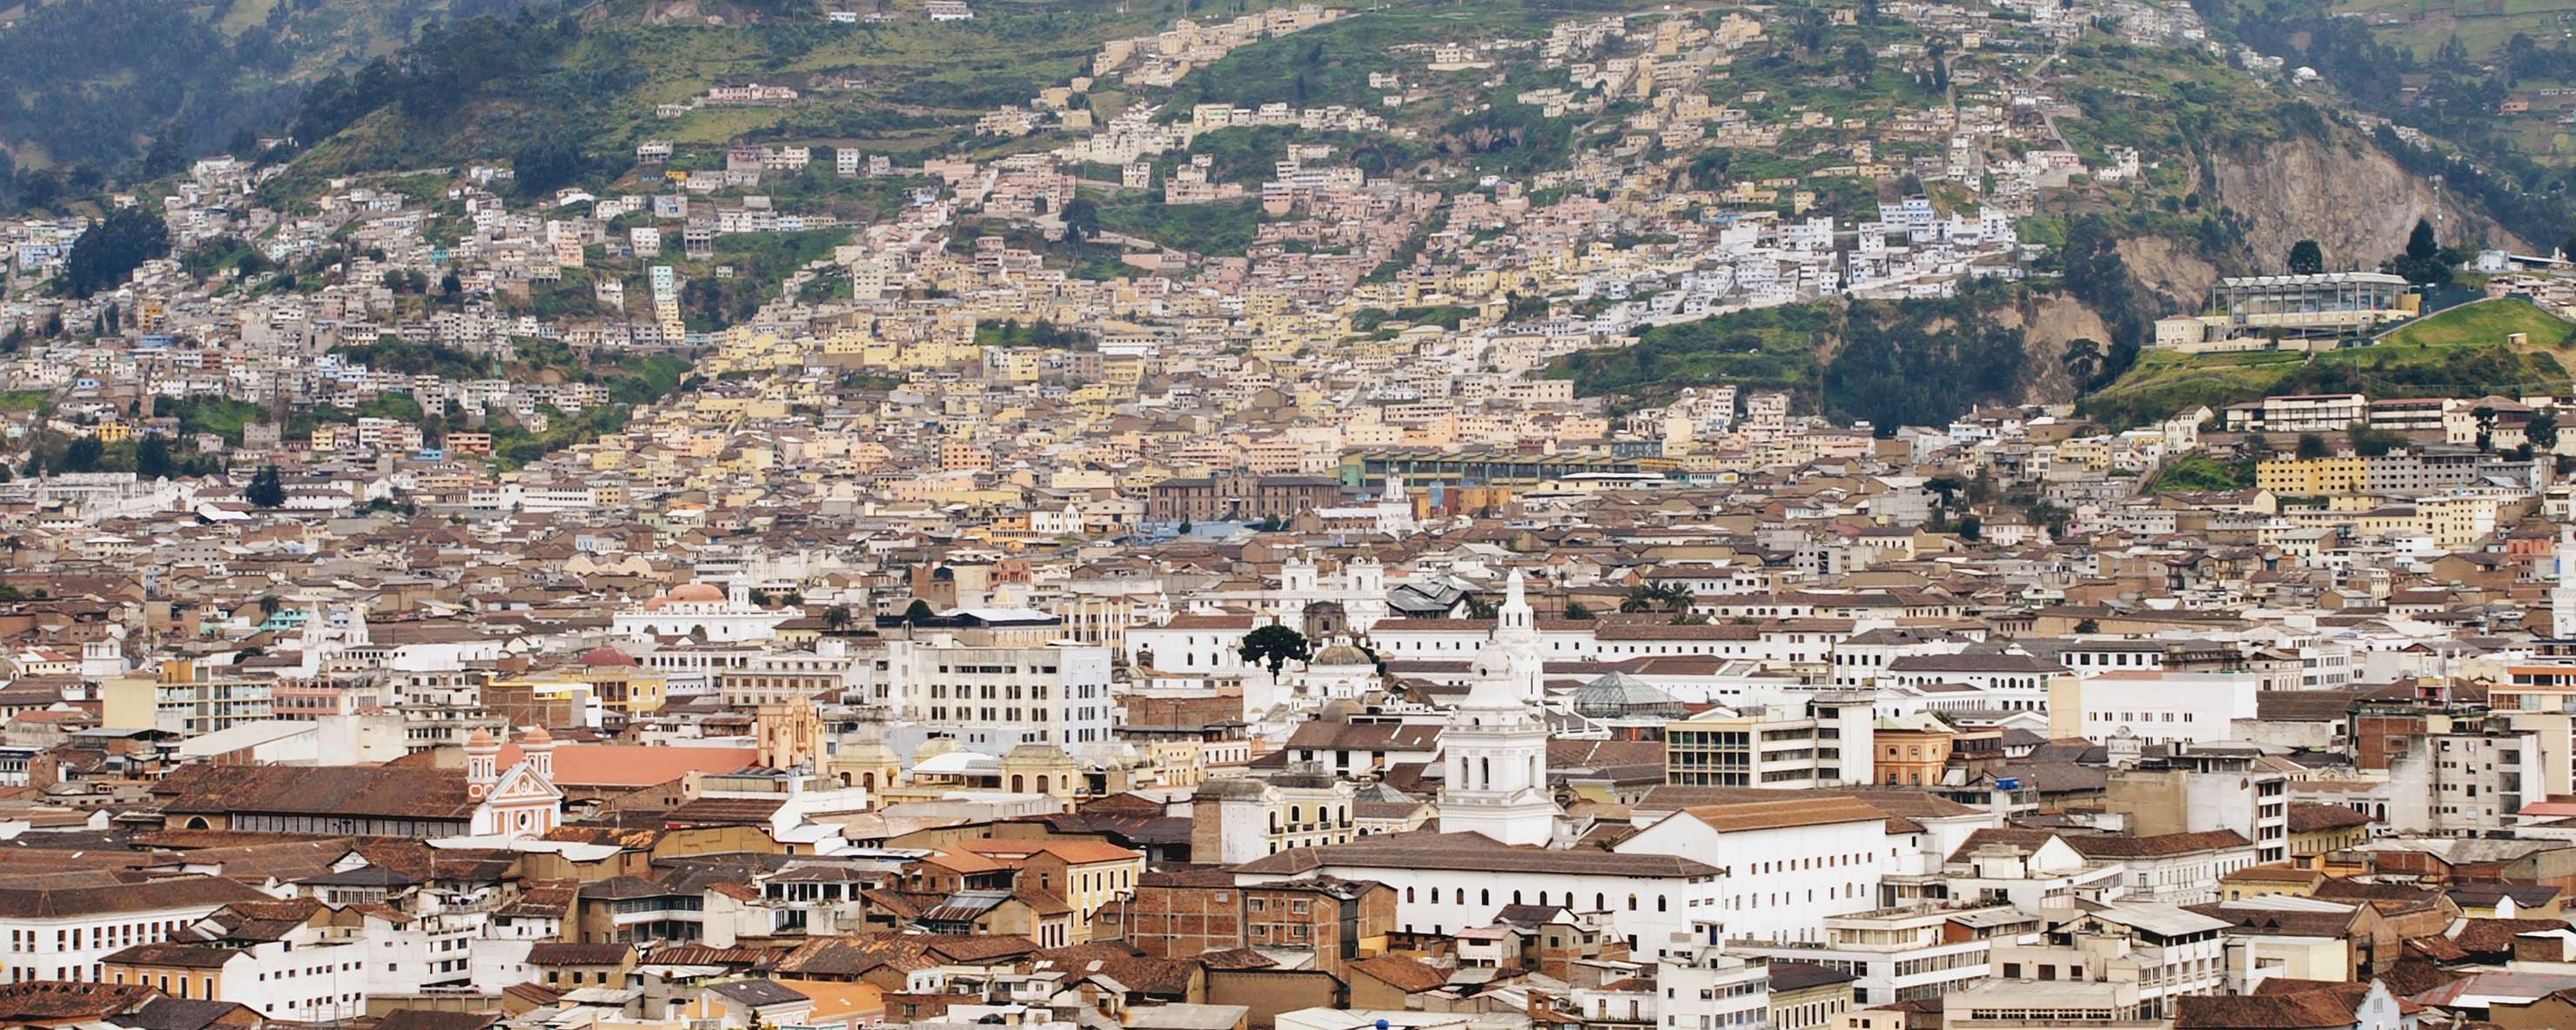 Quito  |  Historic centre